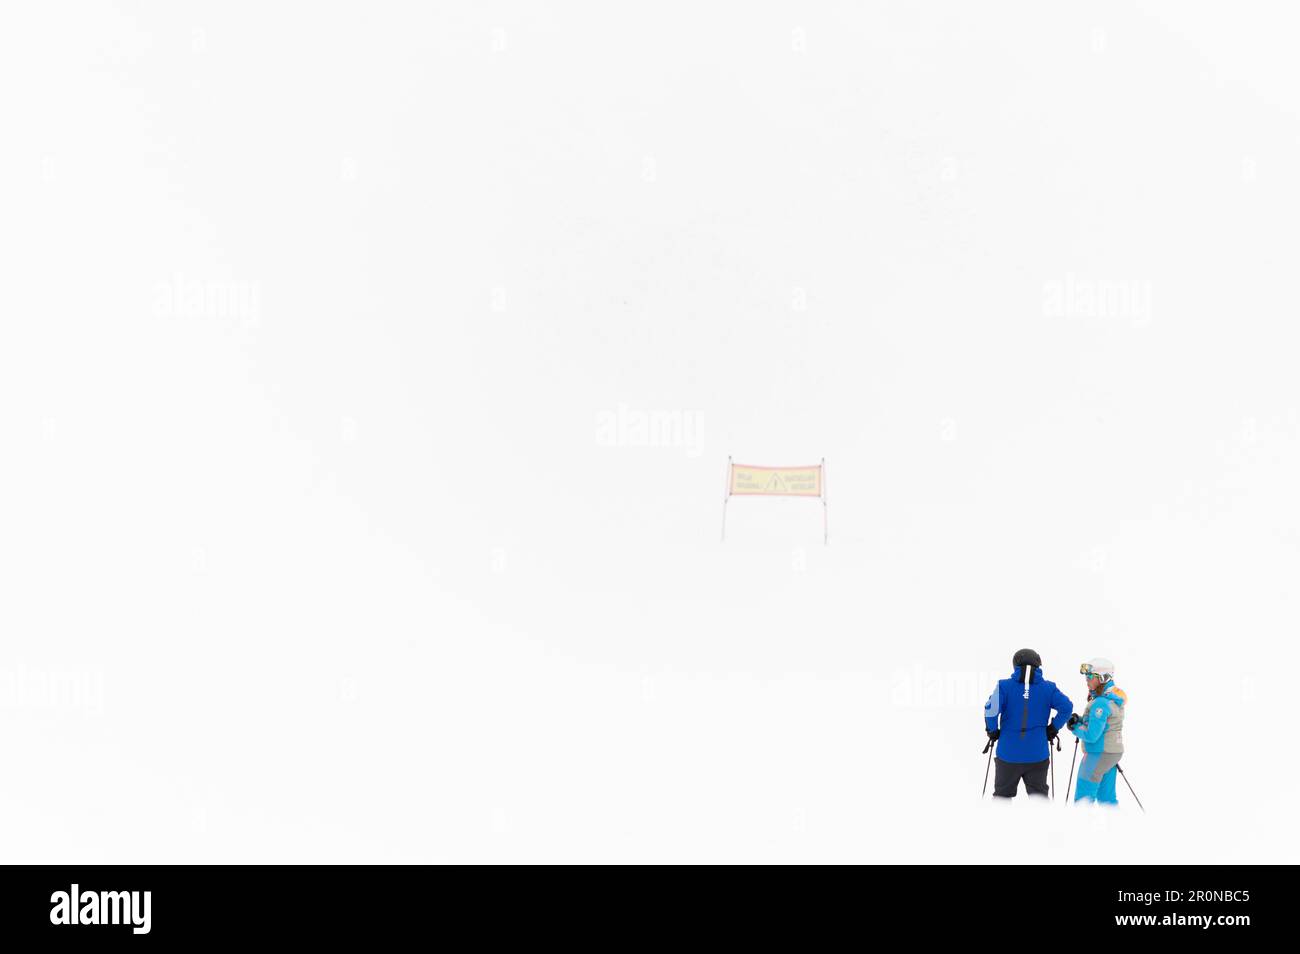 Limone Piemonte, Italien. Panorama der Skipisten Stockfoto